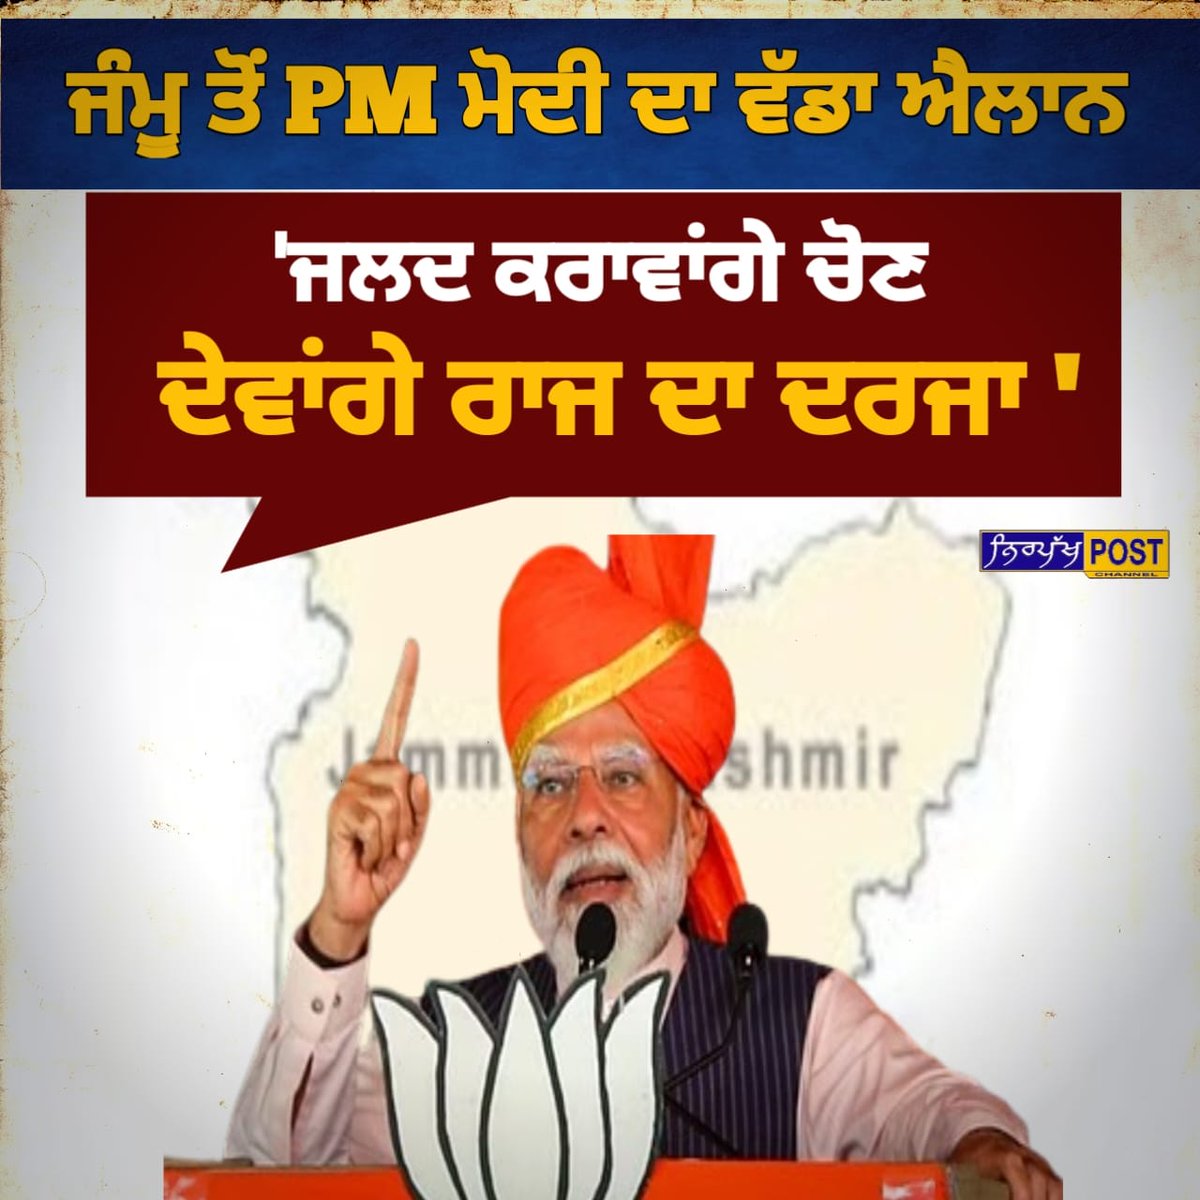 ਜੰਮੂ ਤੋਂ PM ਮੋਦੀ ਦਾ ਵੱਡਾ ਐਲਾਨ..! #jammukashmir #nirpakhpost #pmmodi #BJP4India